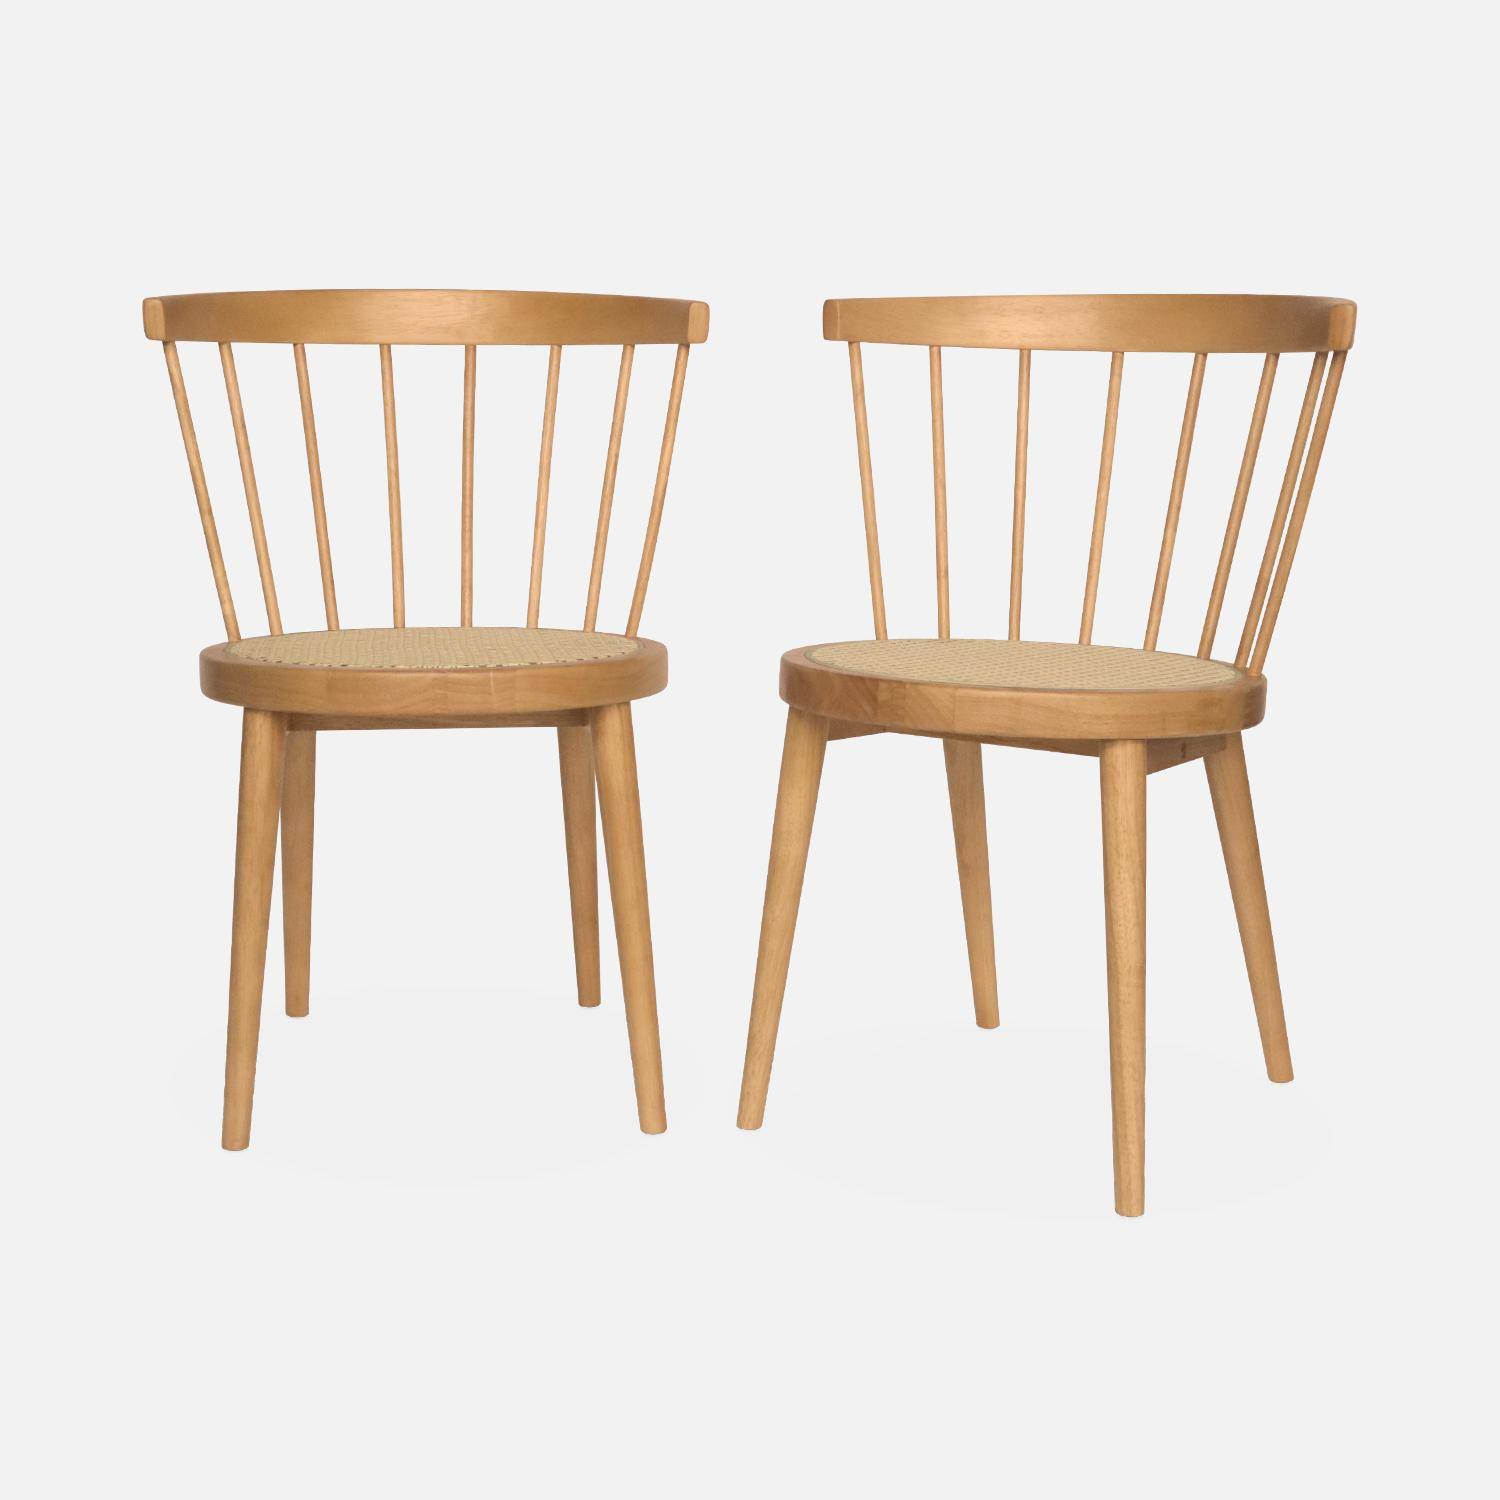 Set von 2 naturfarbenen Stühlen aus Holz und Rohrgeflecht, Nora, B 54 x T 54 x H 76,5cm Photo4